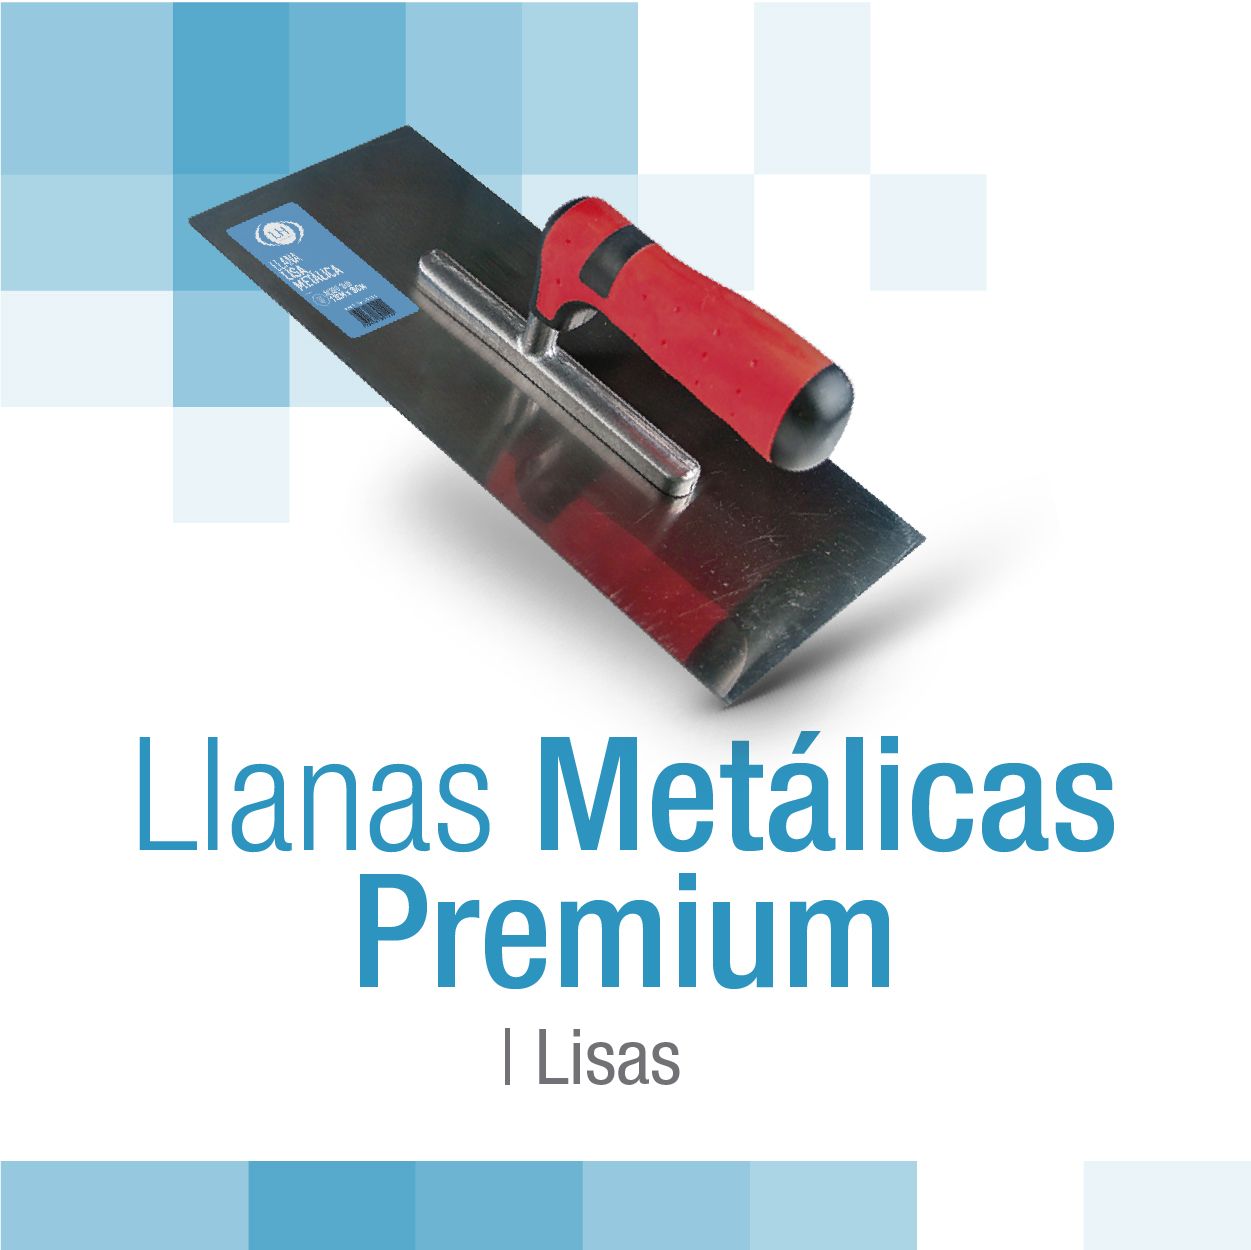 encabezado_metalicas_premium_lisas